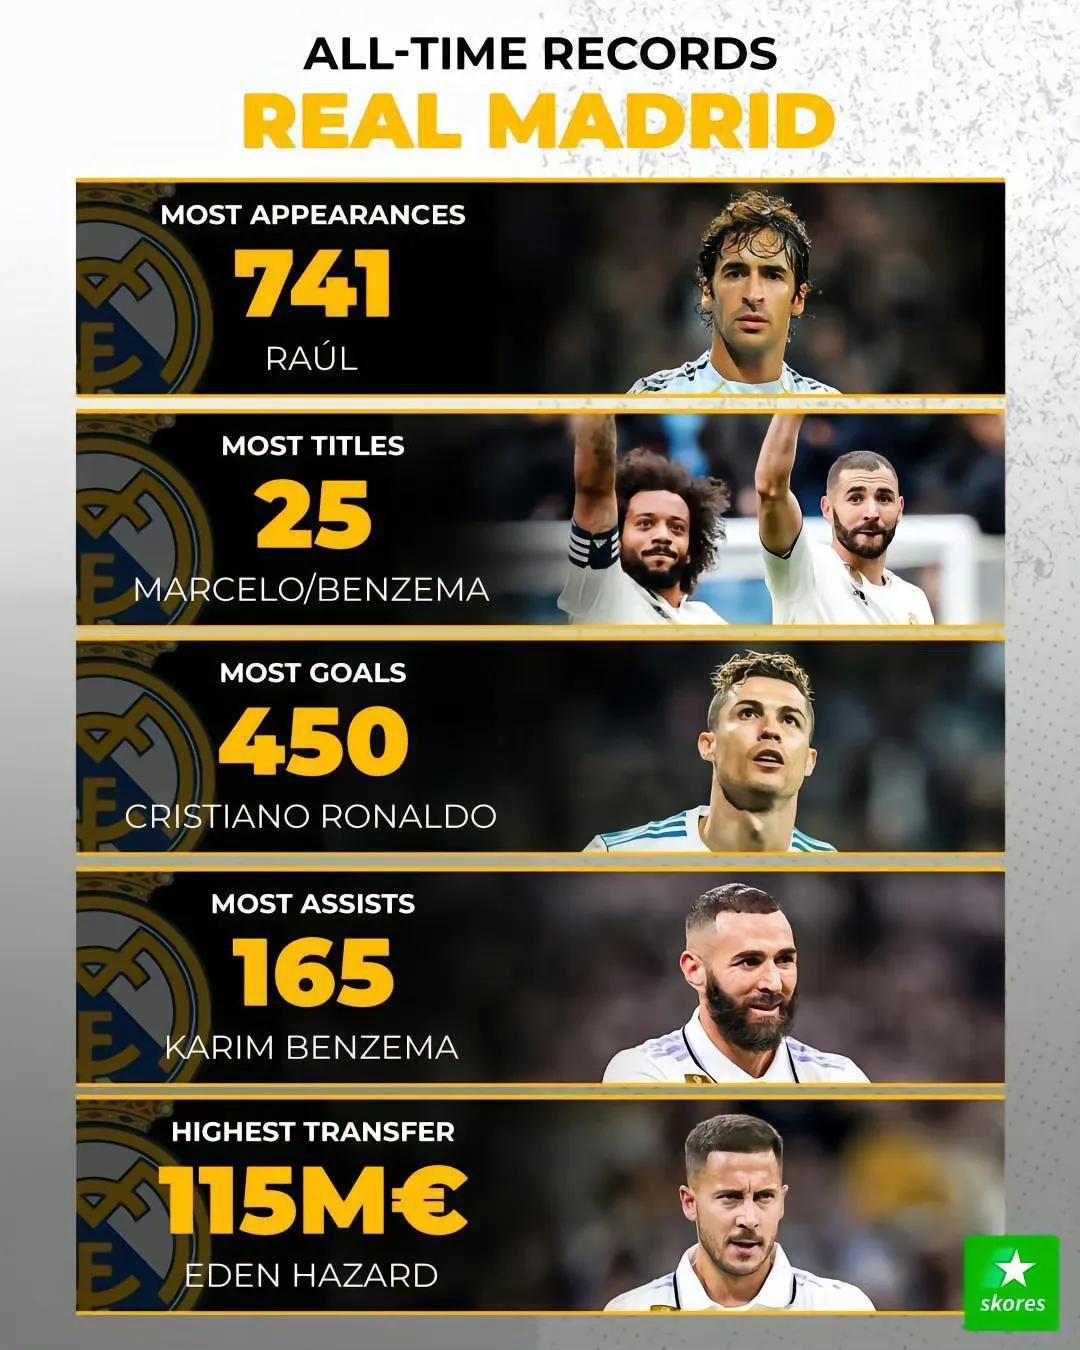 欧洲九大豪门队史最佳记录。

巴塞罗那记录全是梅西，出场数最多，进球数最多，助攻(2)